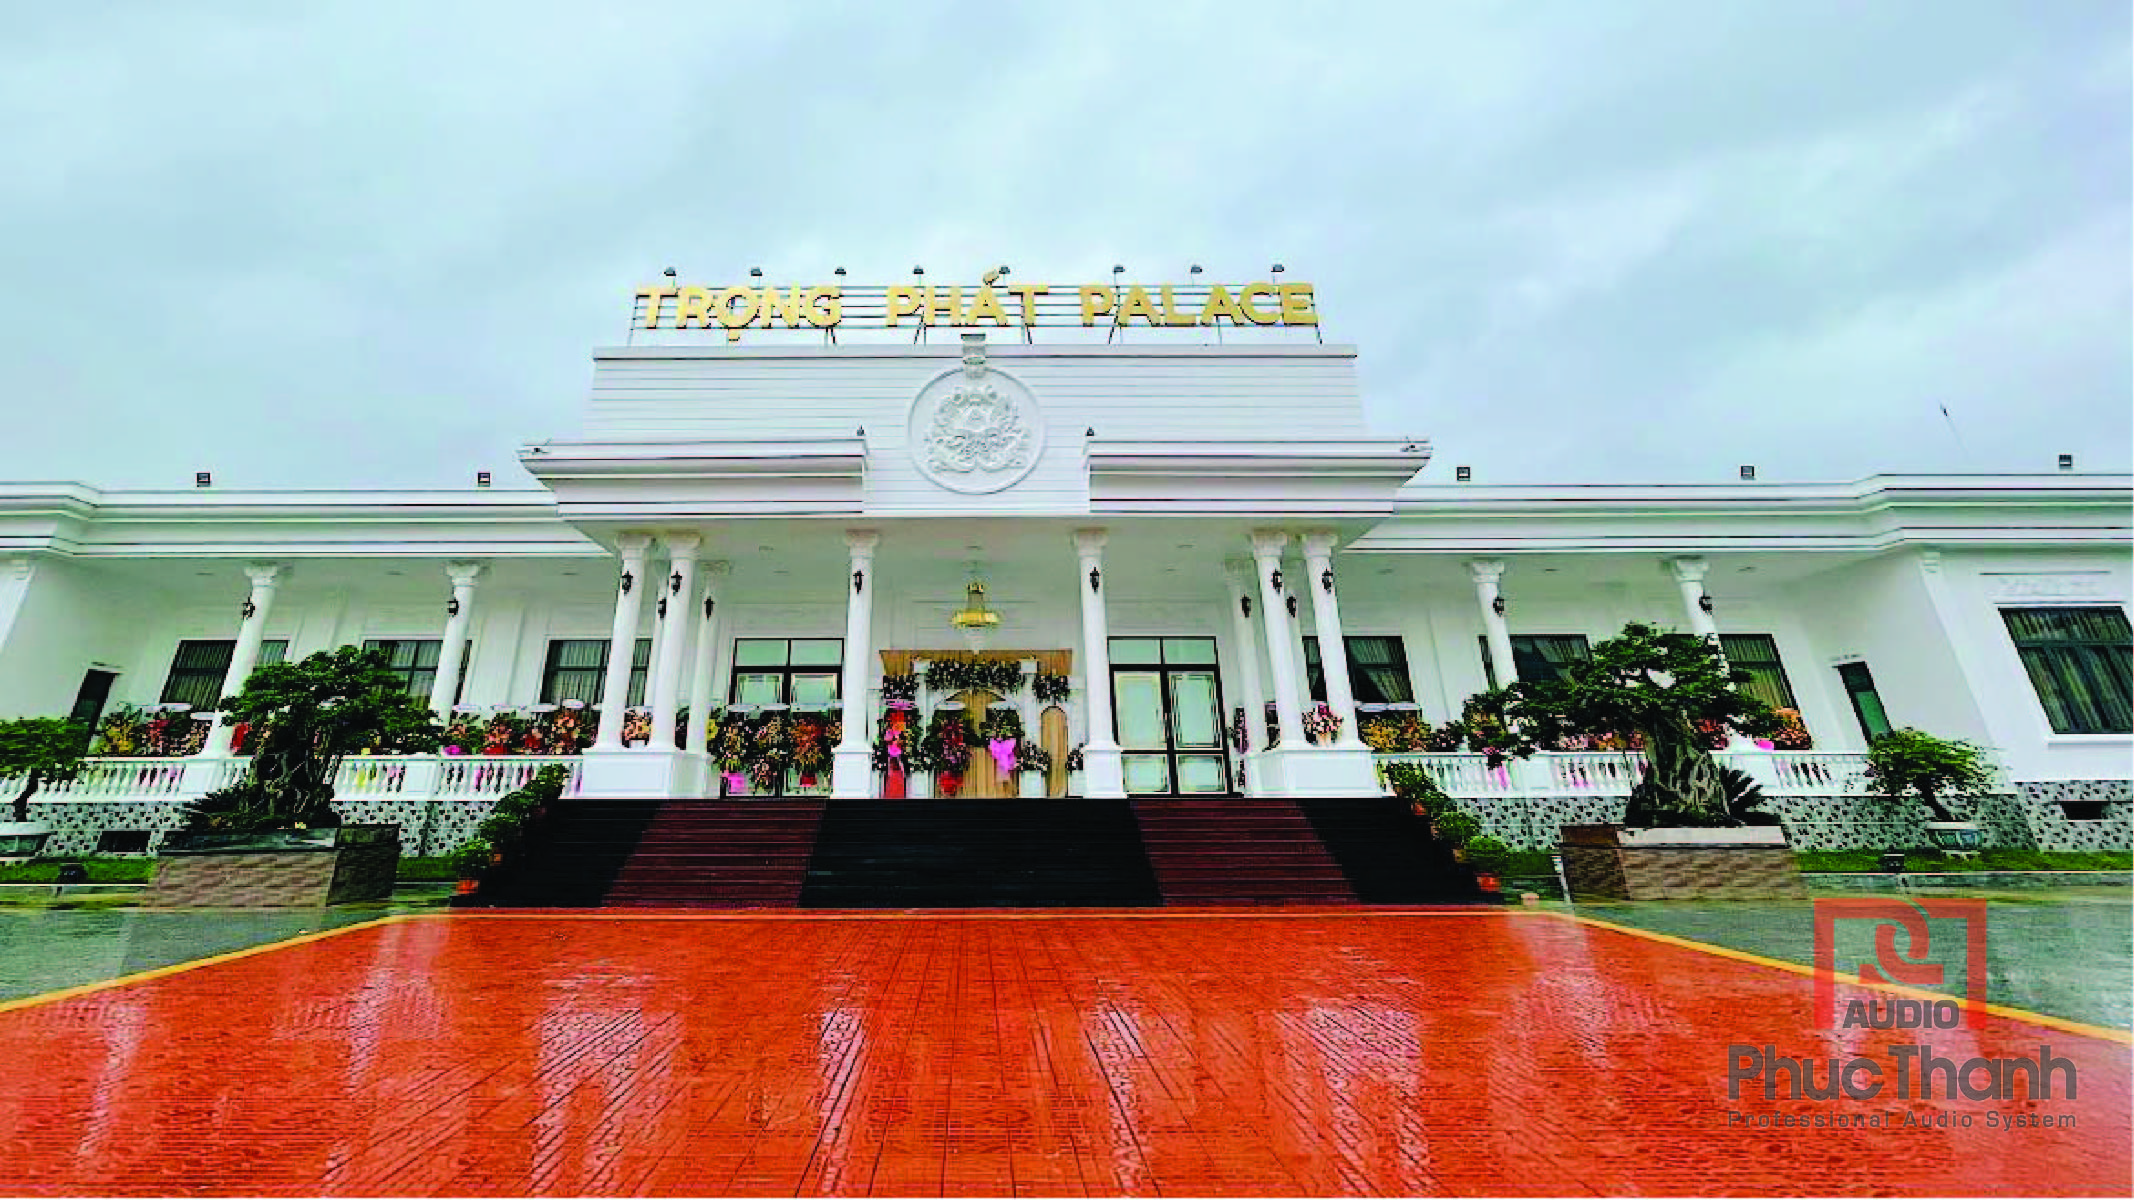 Trung tâm hội nghị tiệc cưới Trọng Phát Palace Bình Định